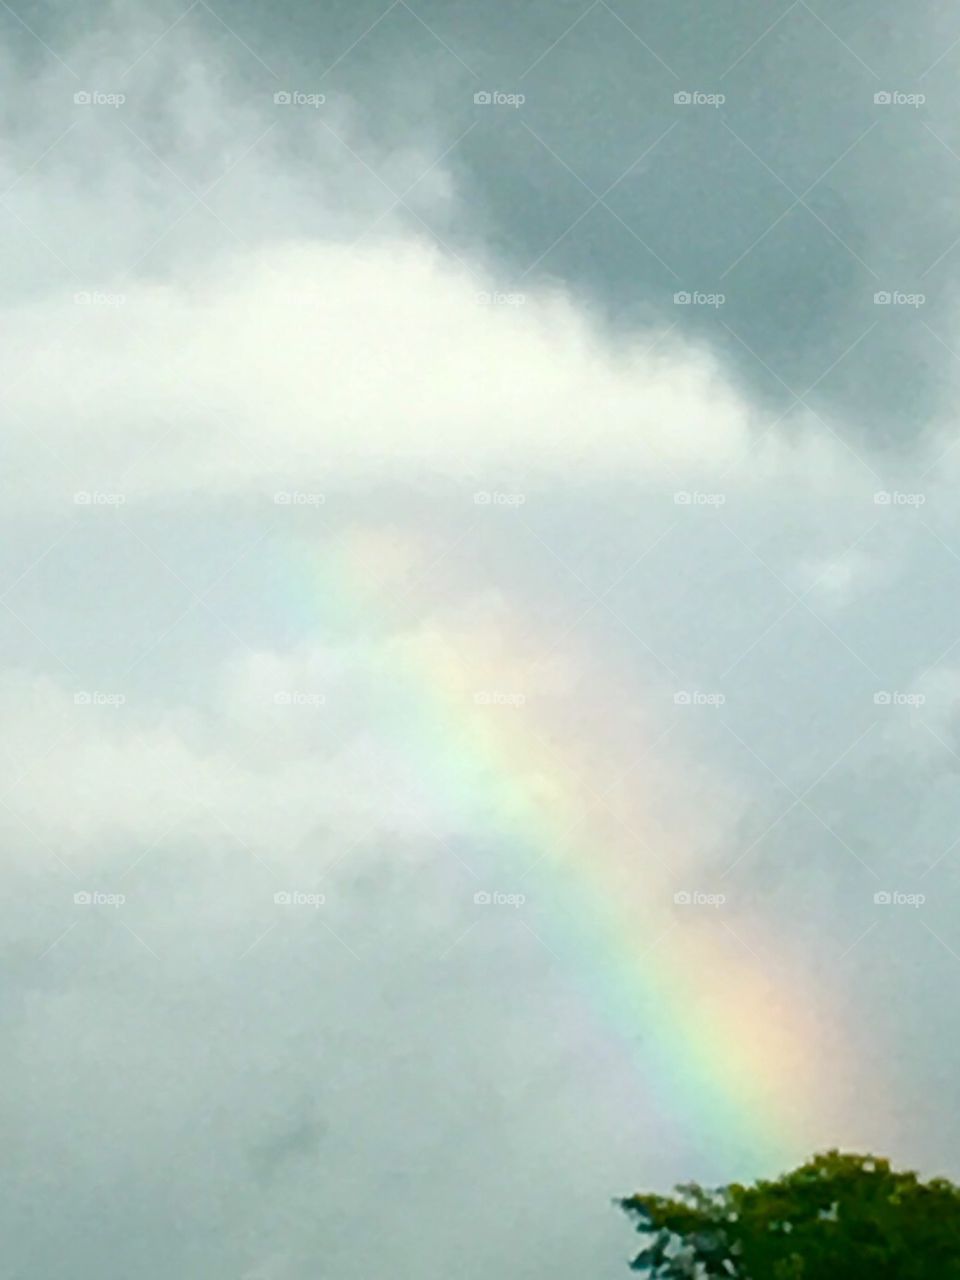 A hint of rainbow